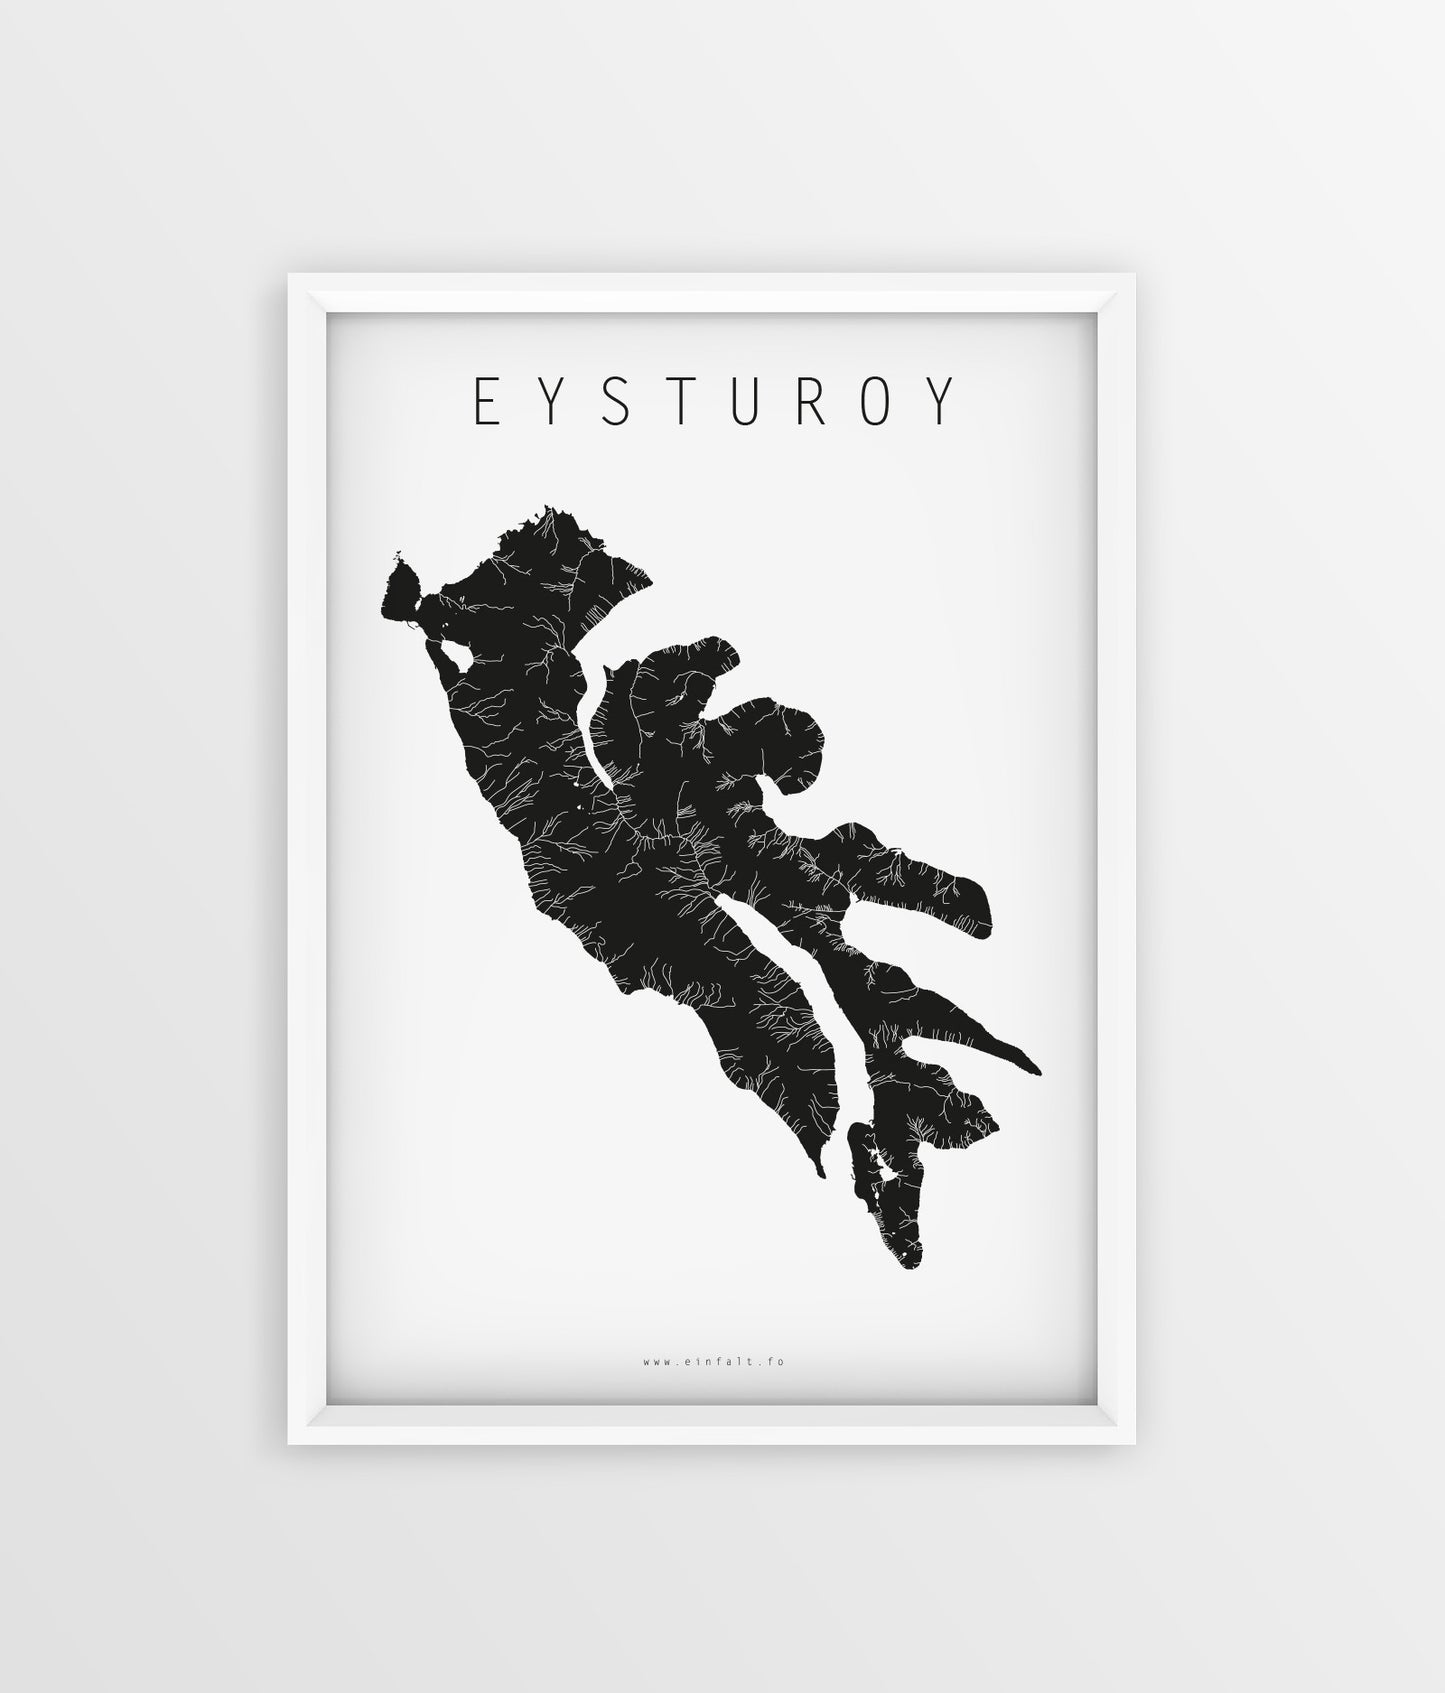 18 oyggjar - Eysturoy - Føroyskar Plakatir - Faroe islands posters - Færøske plakater - Føroyar - Færøerne - Føroyakort